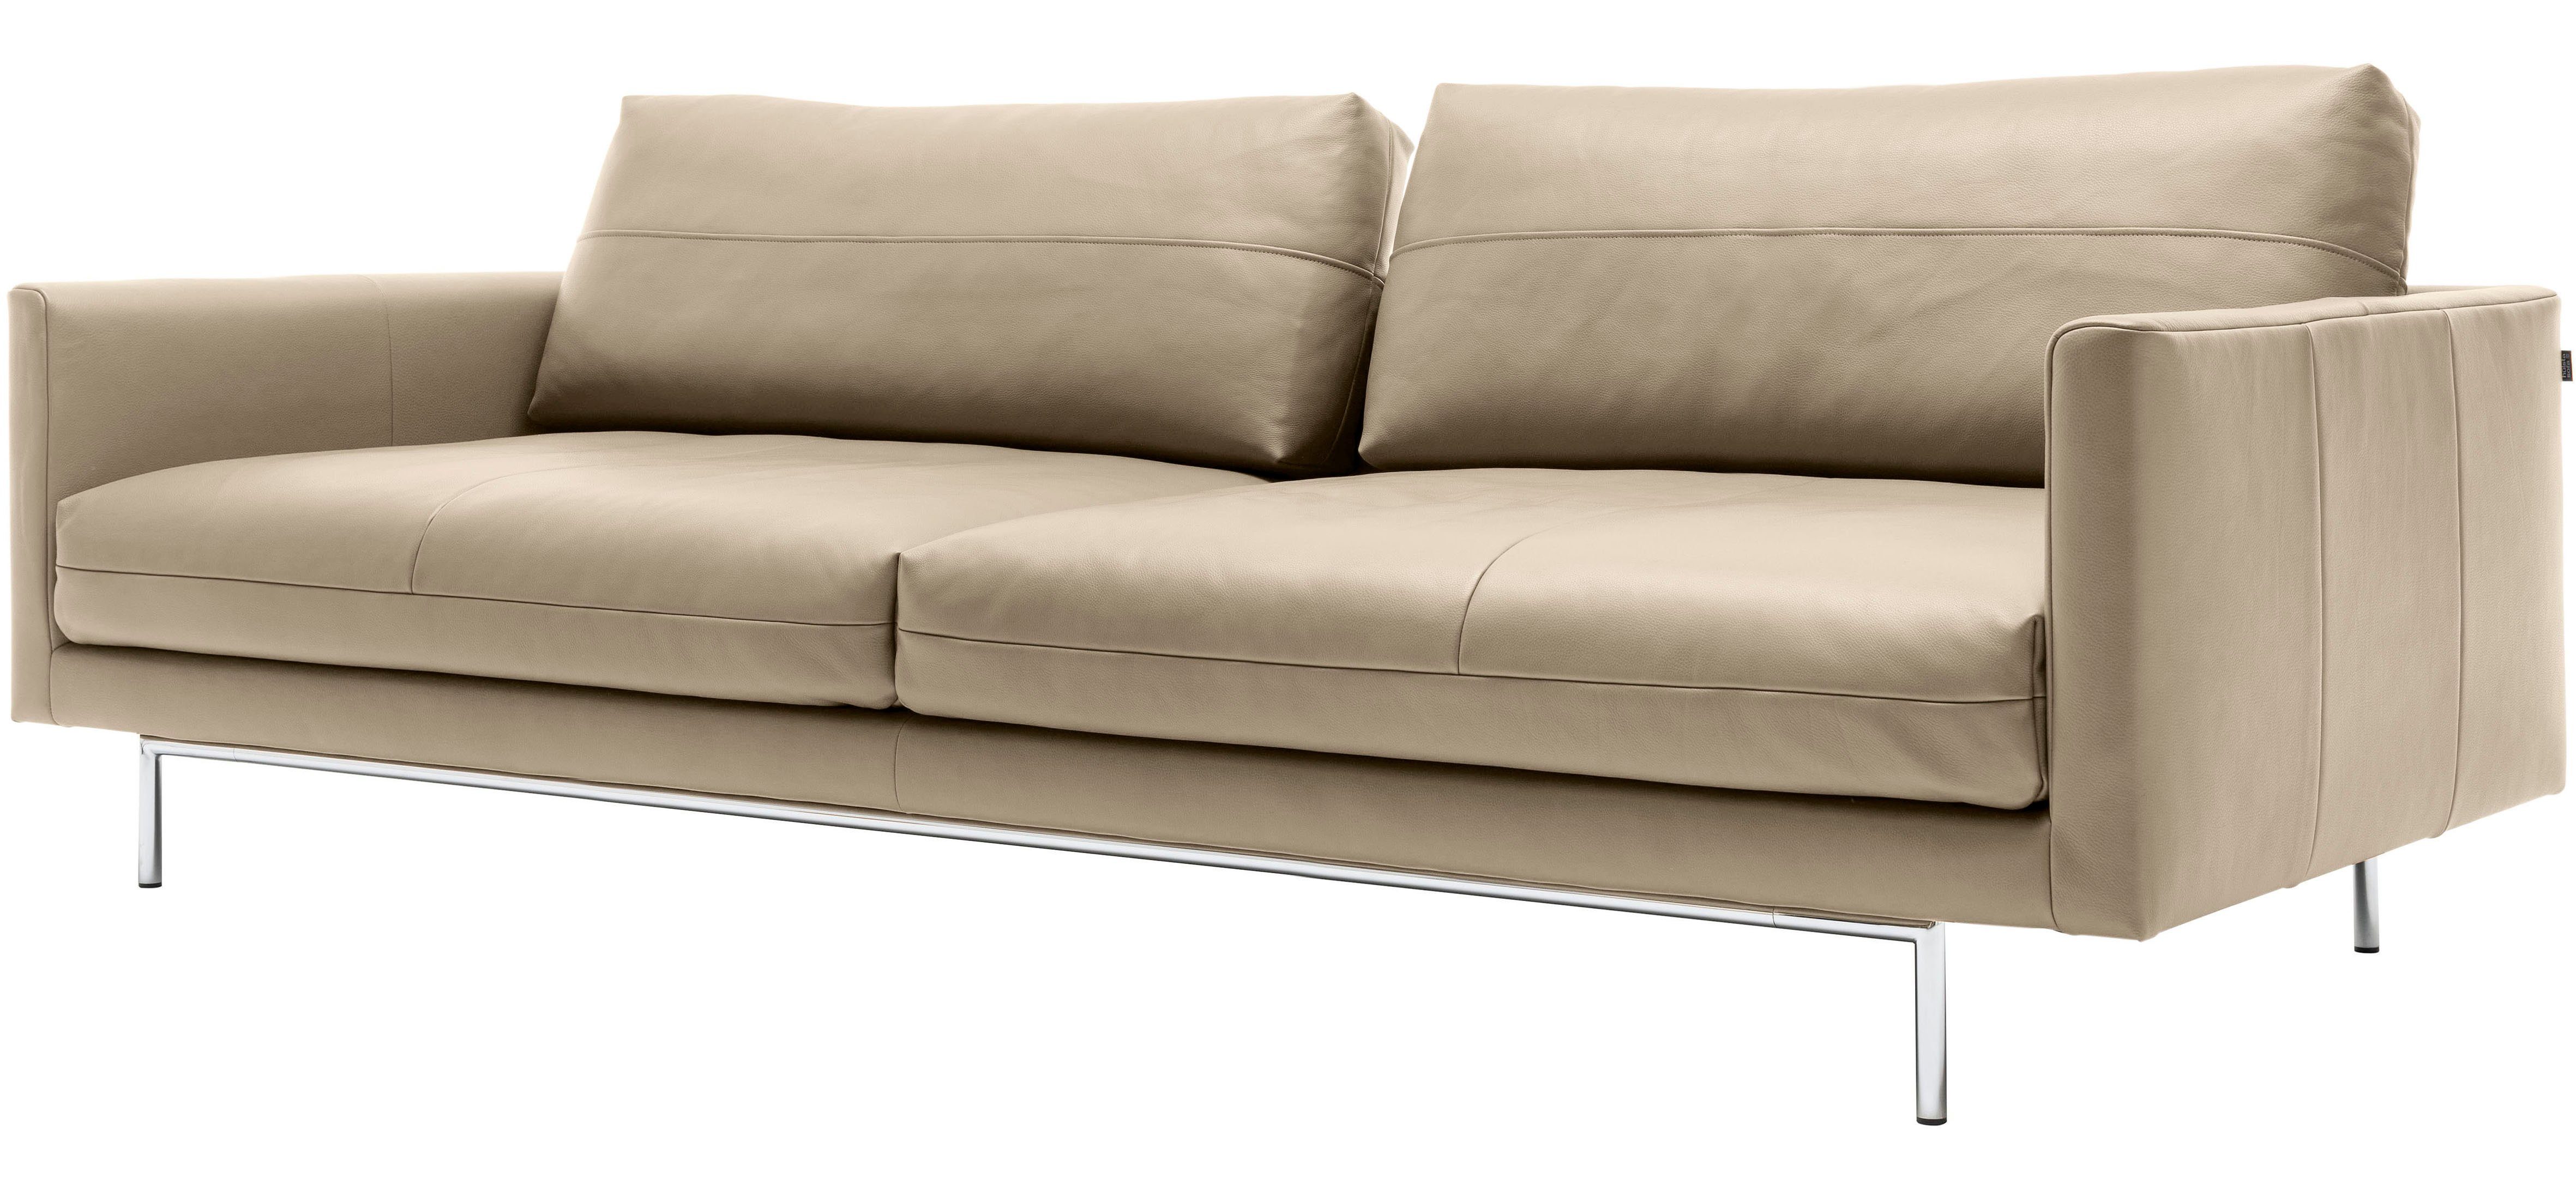 4-Sitzer beige sofa hülsta | beige